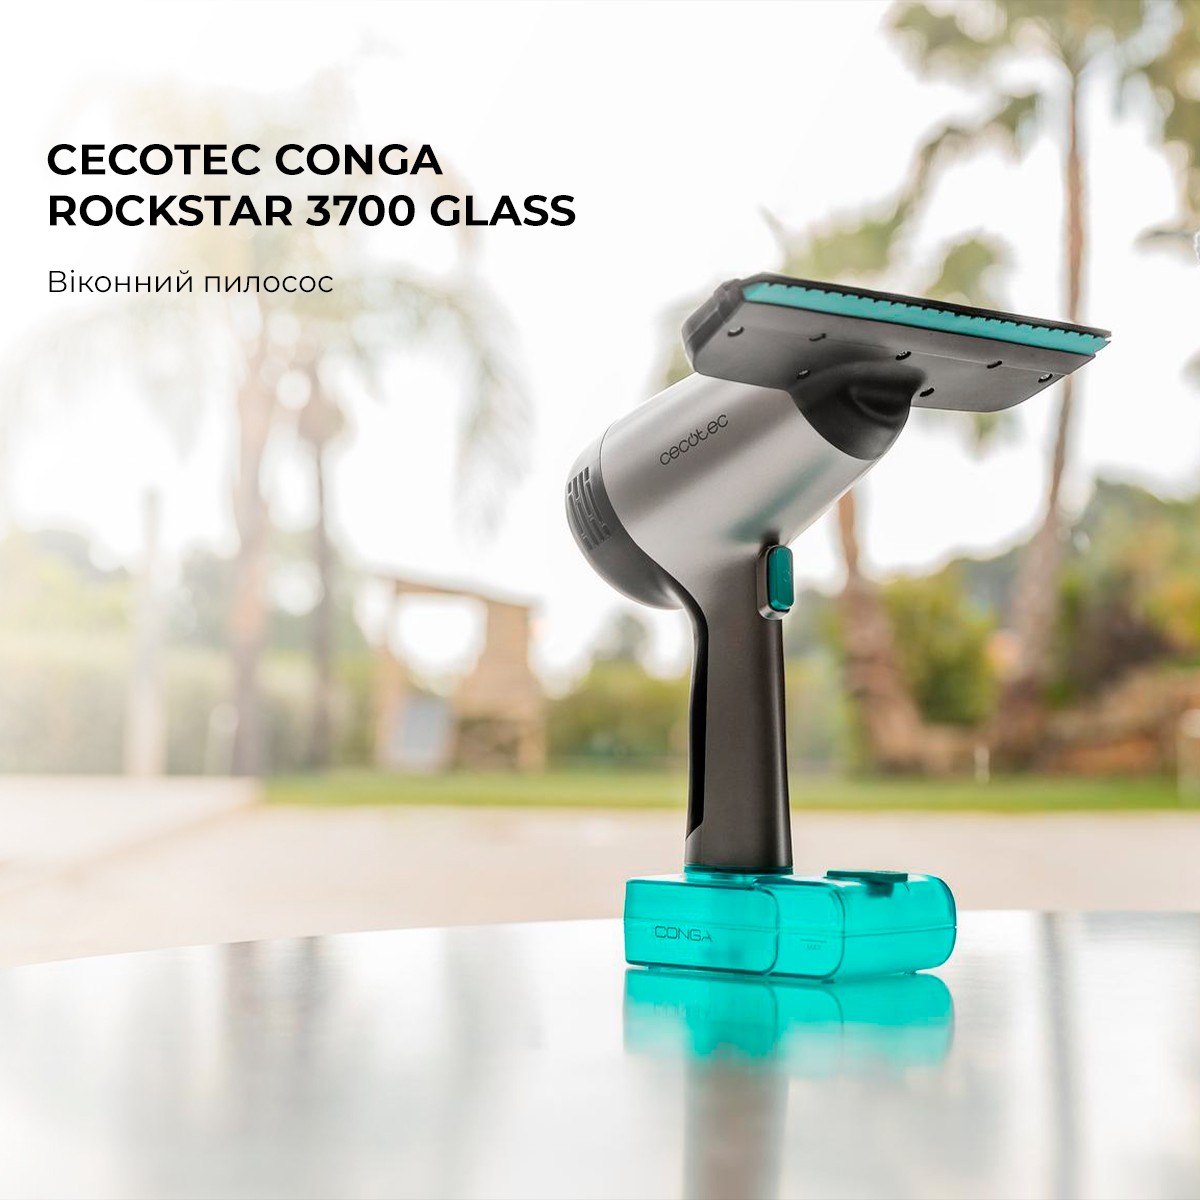 Пилосос Cecotec Conga Rockstar 3700 Glass (CCTC-08058) інструкція - зображення 6